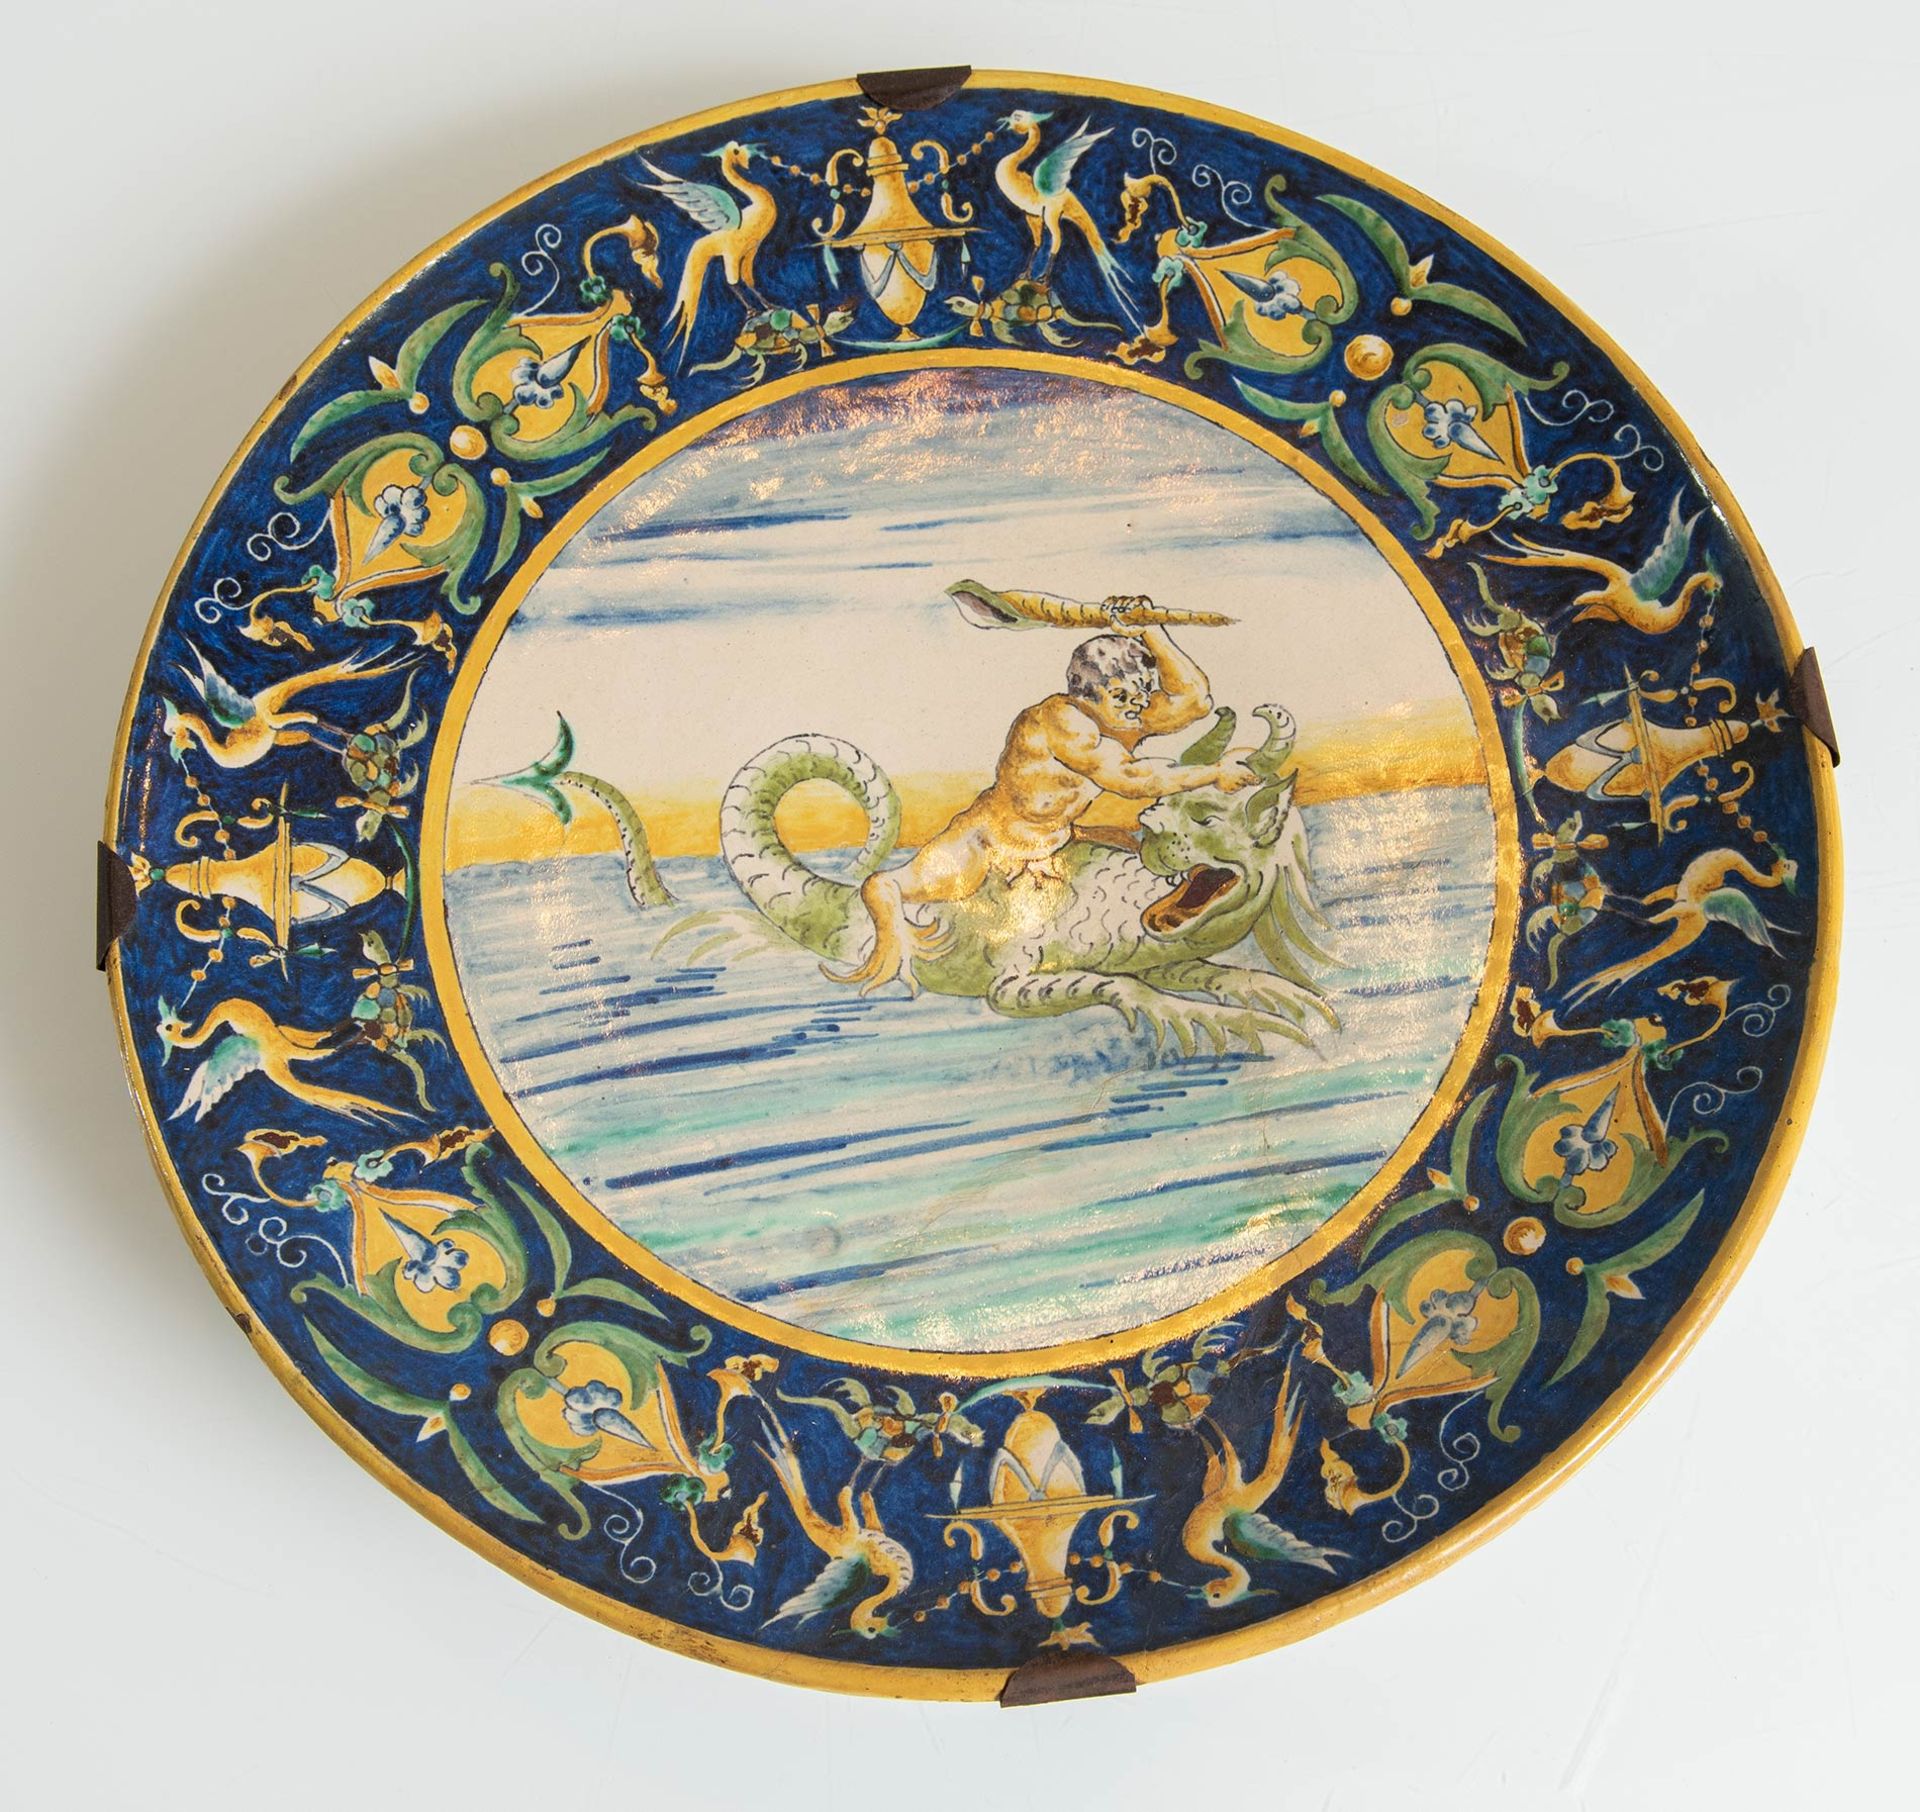 Piatto in ceramica policroma con scena mitologica, Italia, fine del XIX sec.